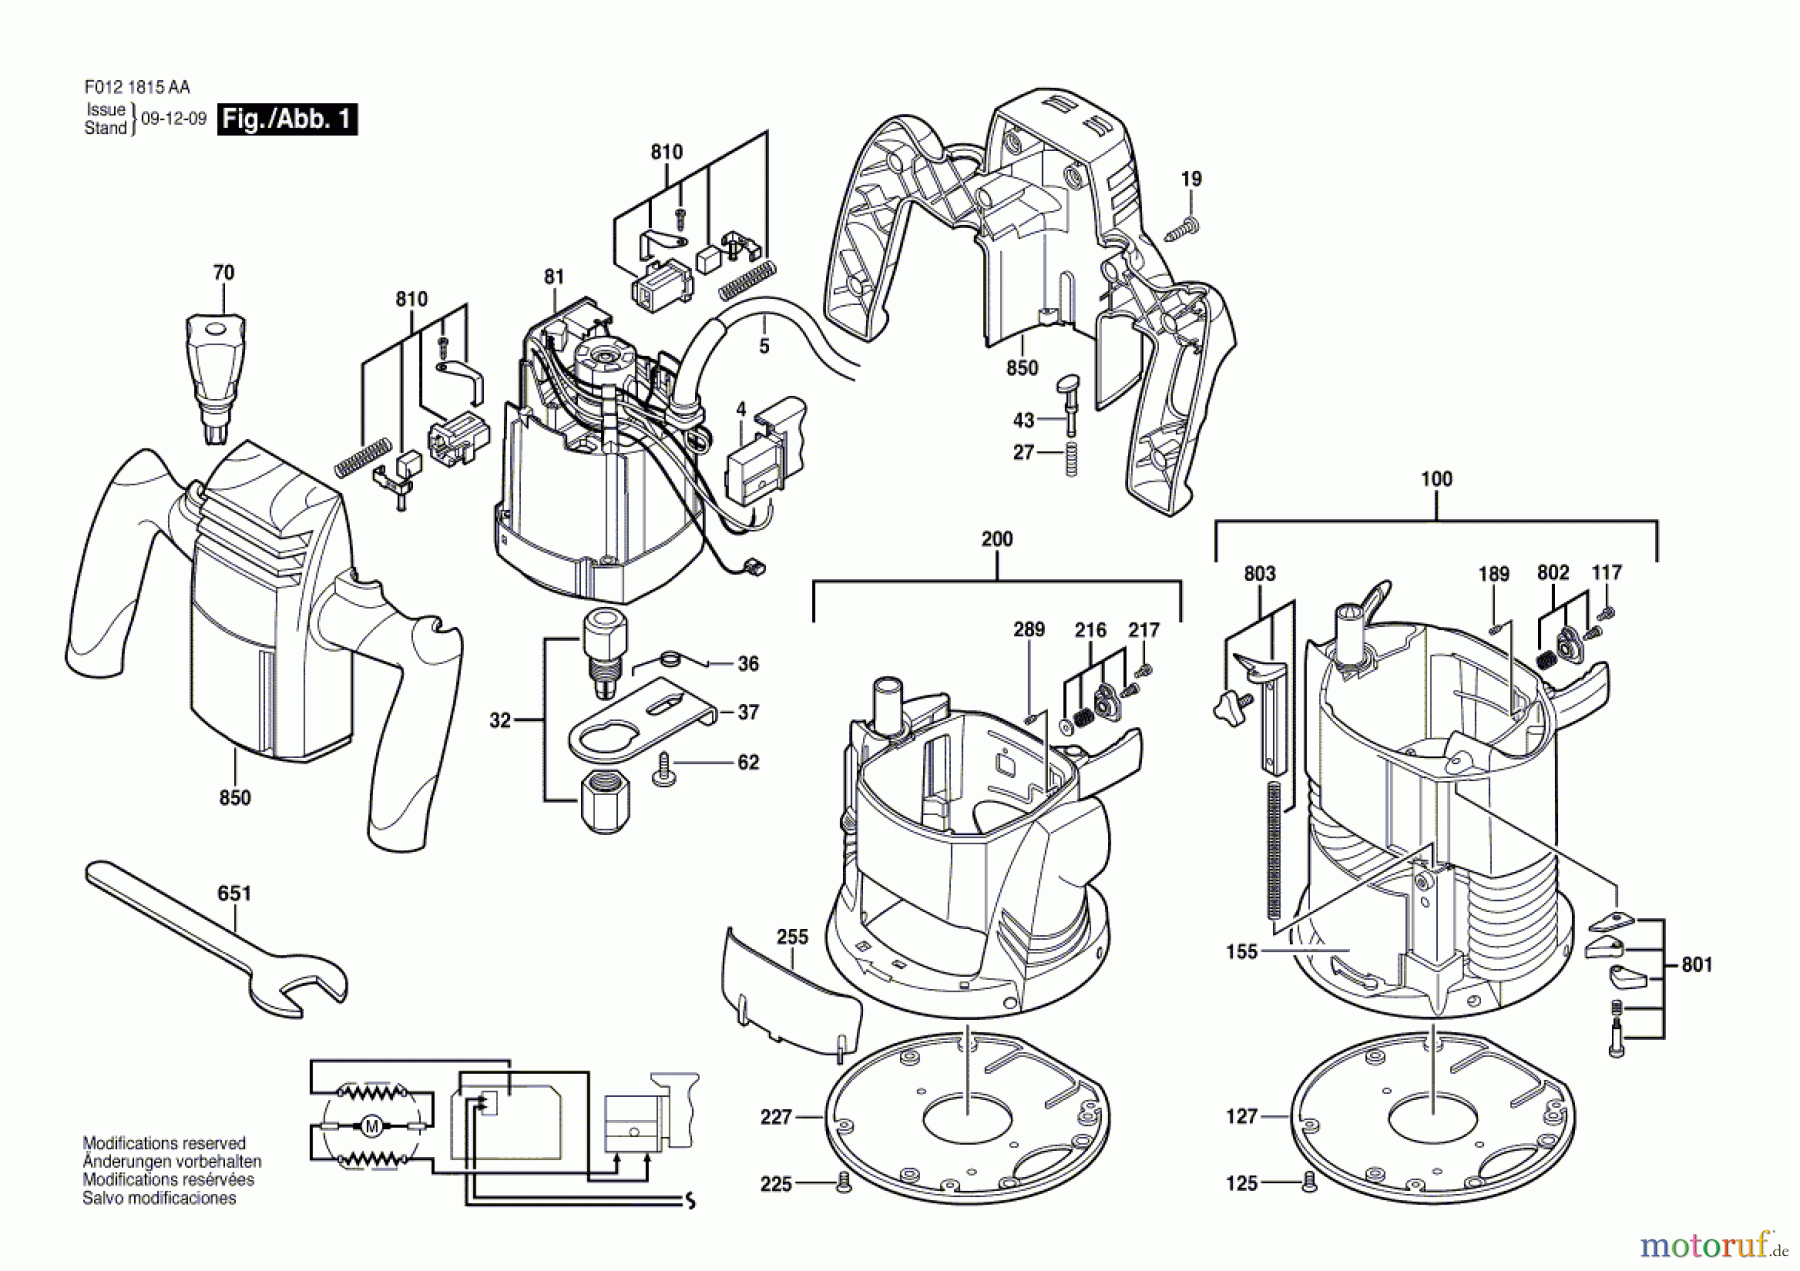  Bosch Werkzeug Motorregeleinheit 1820 Seite 1